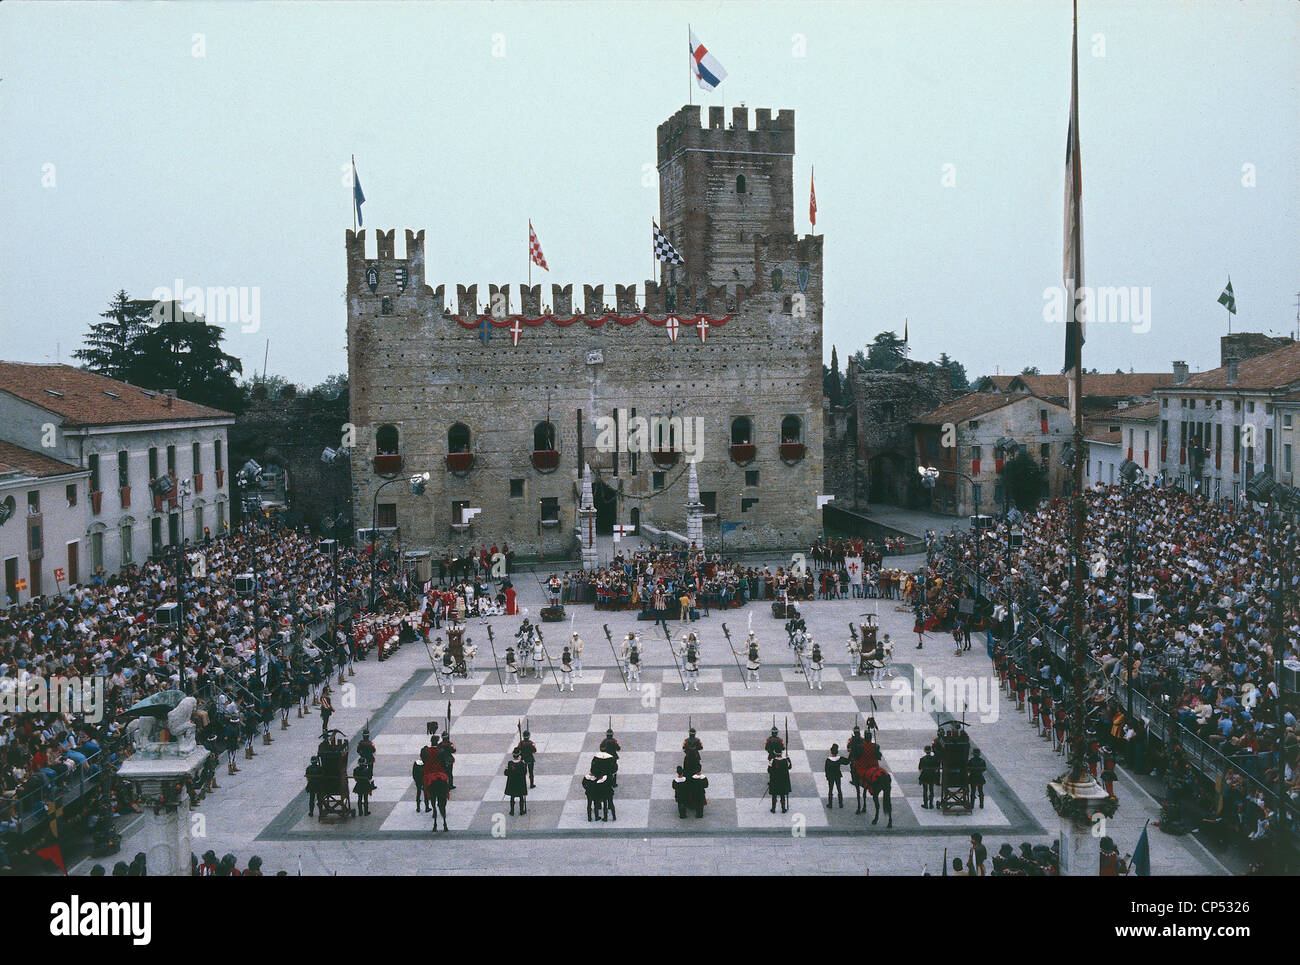 Veneto - Marostica (Vi), living chess game. Stock Photo